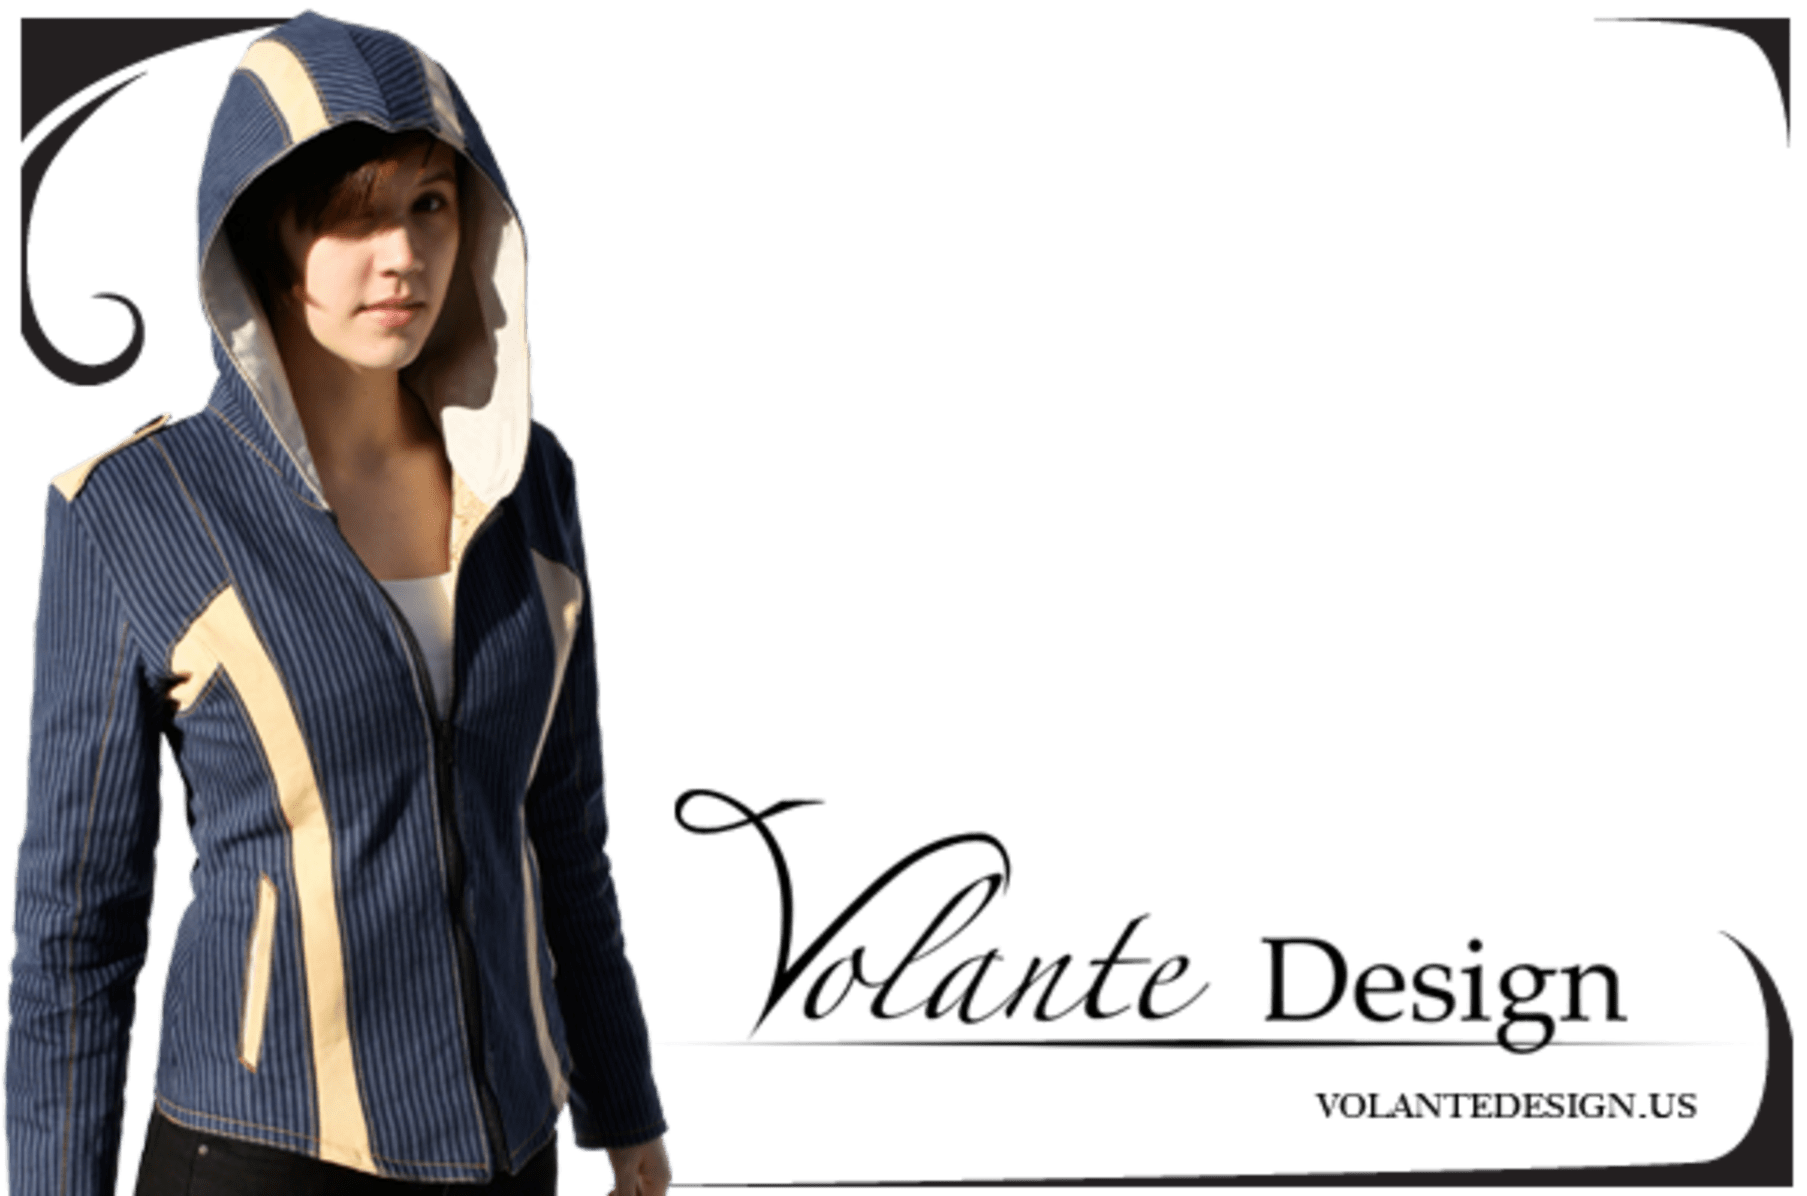 Assassin's Creed – Volante Design